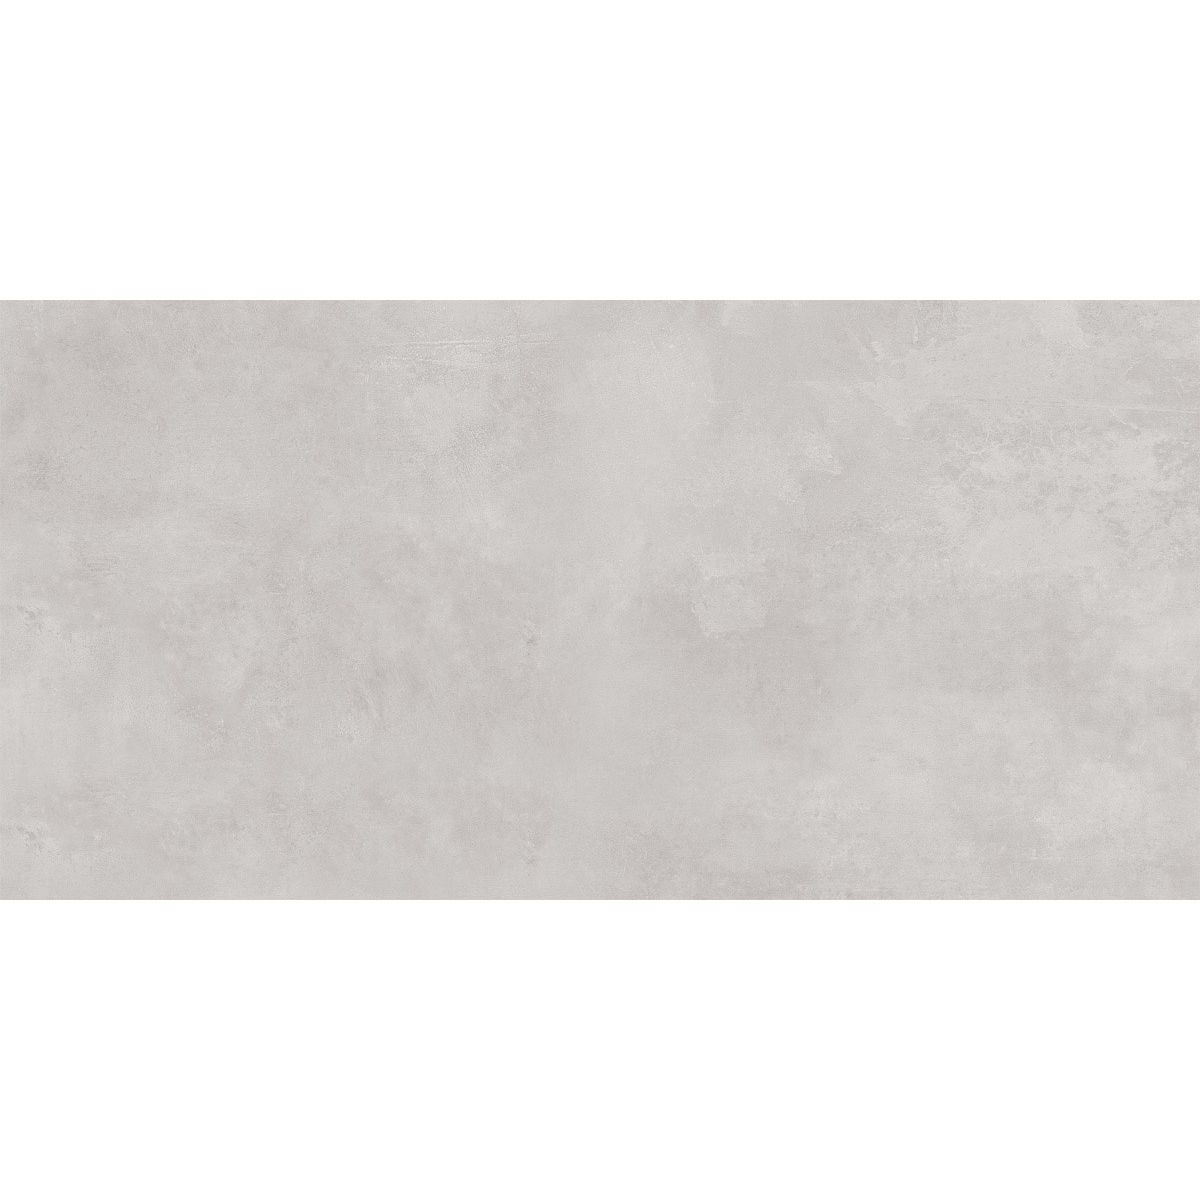 Настенная плитка Керлайф Roma Beige 31,5x63 см (923170)